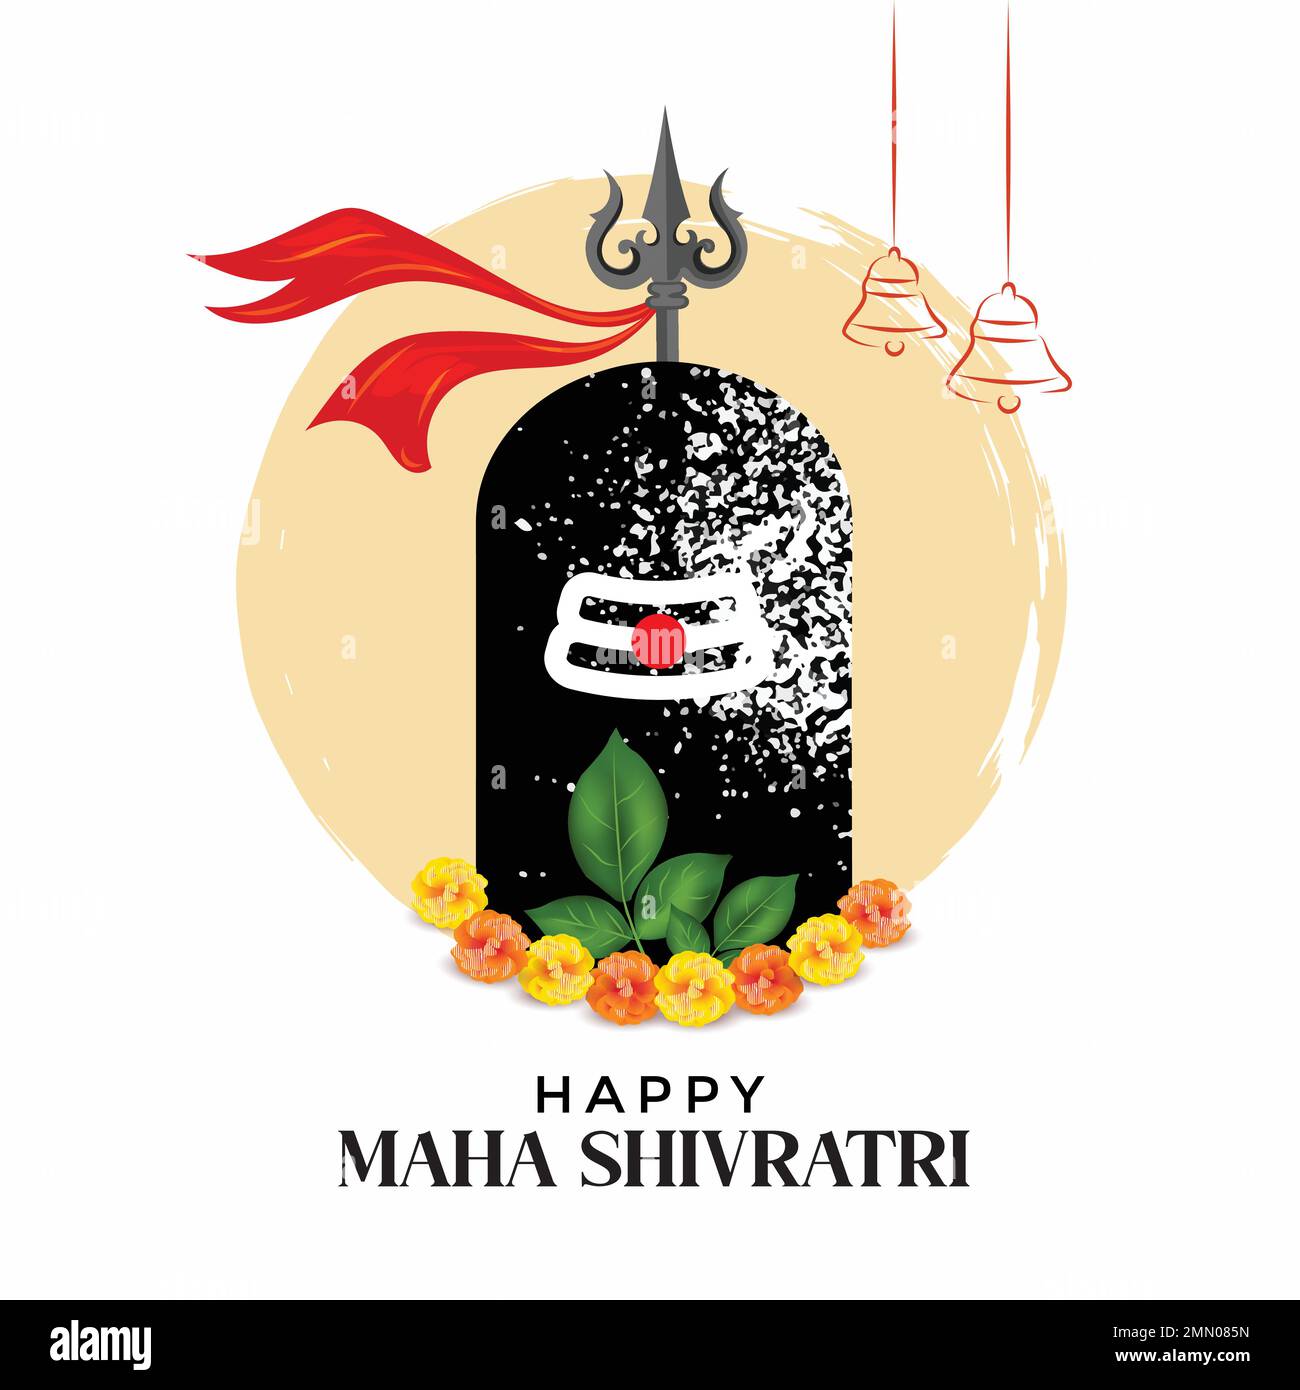 Happy Maha Shivratri Festival sfondo, Vector Illustration di Shivlinga (simbolo del Signore Shiva). Illustrazione Vettoriale